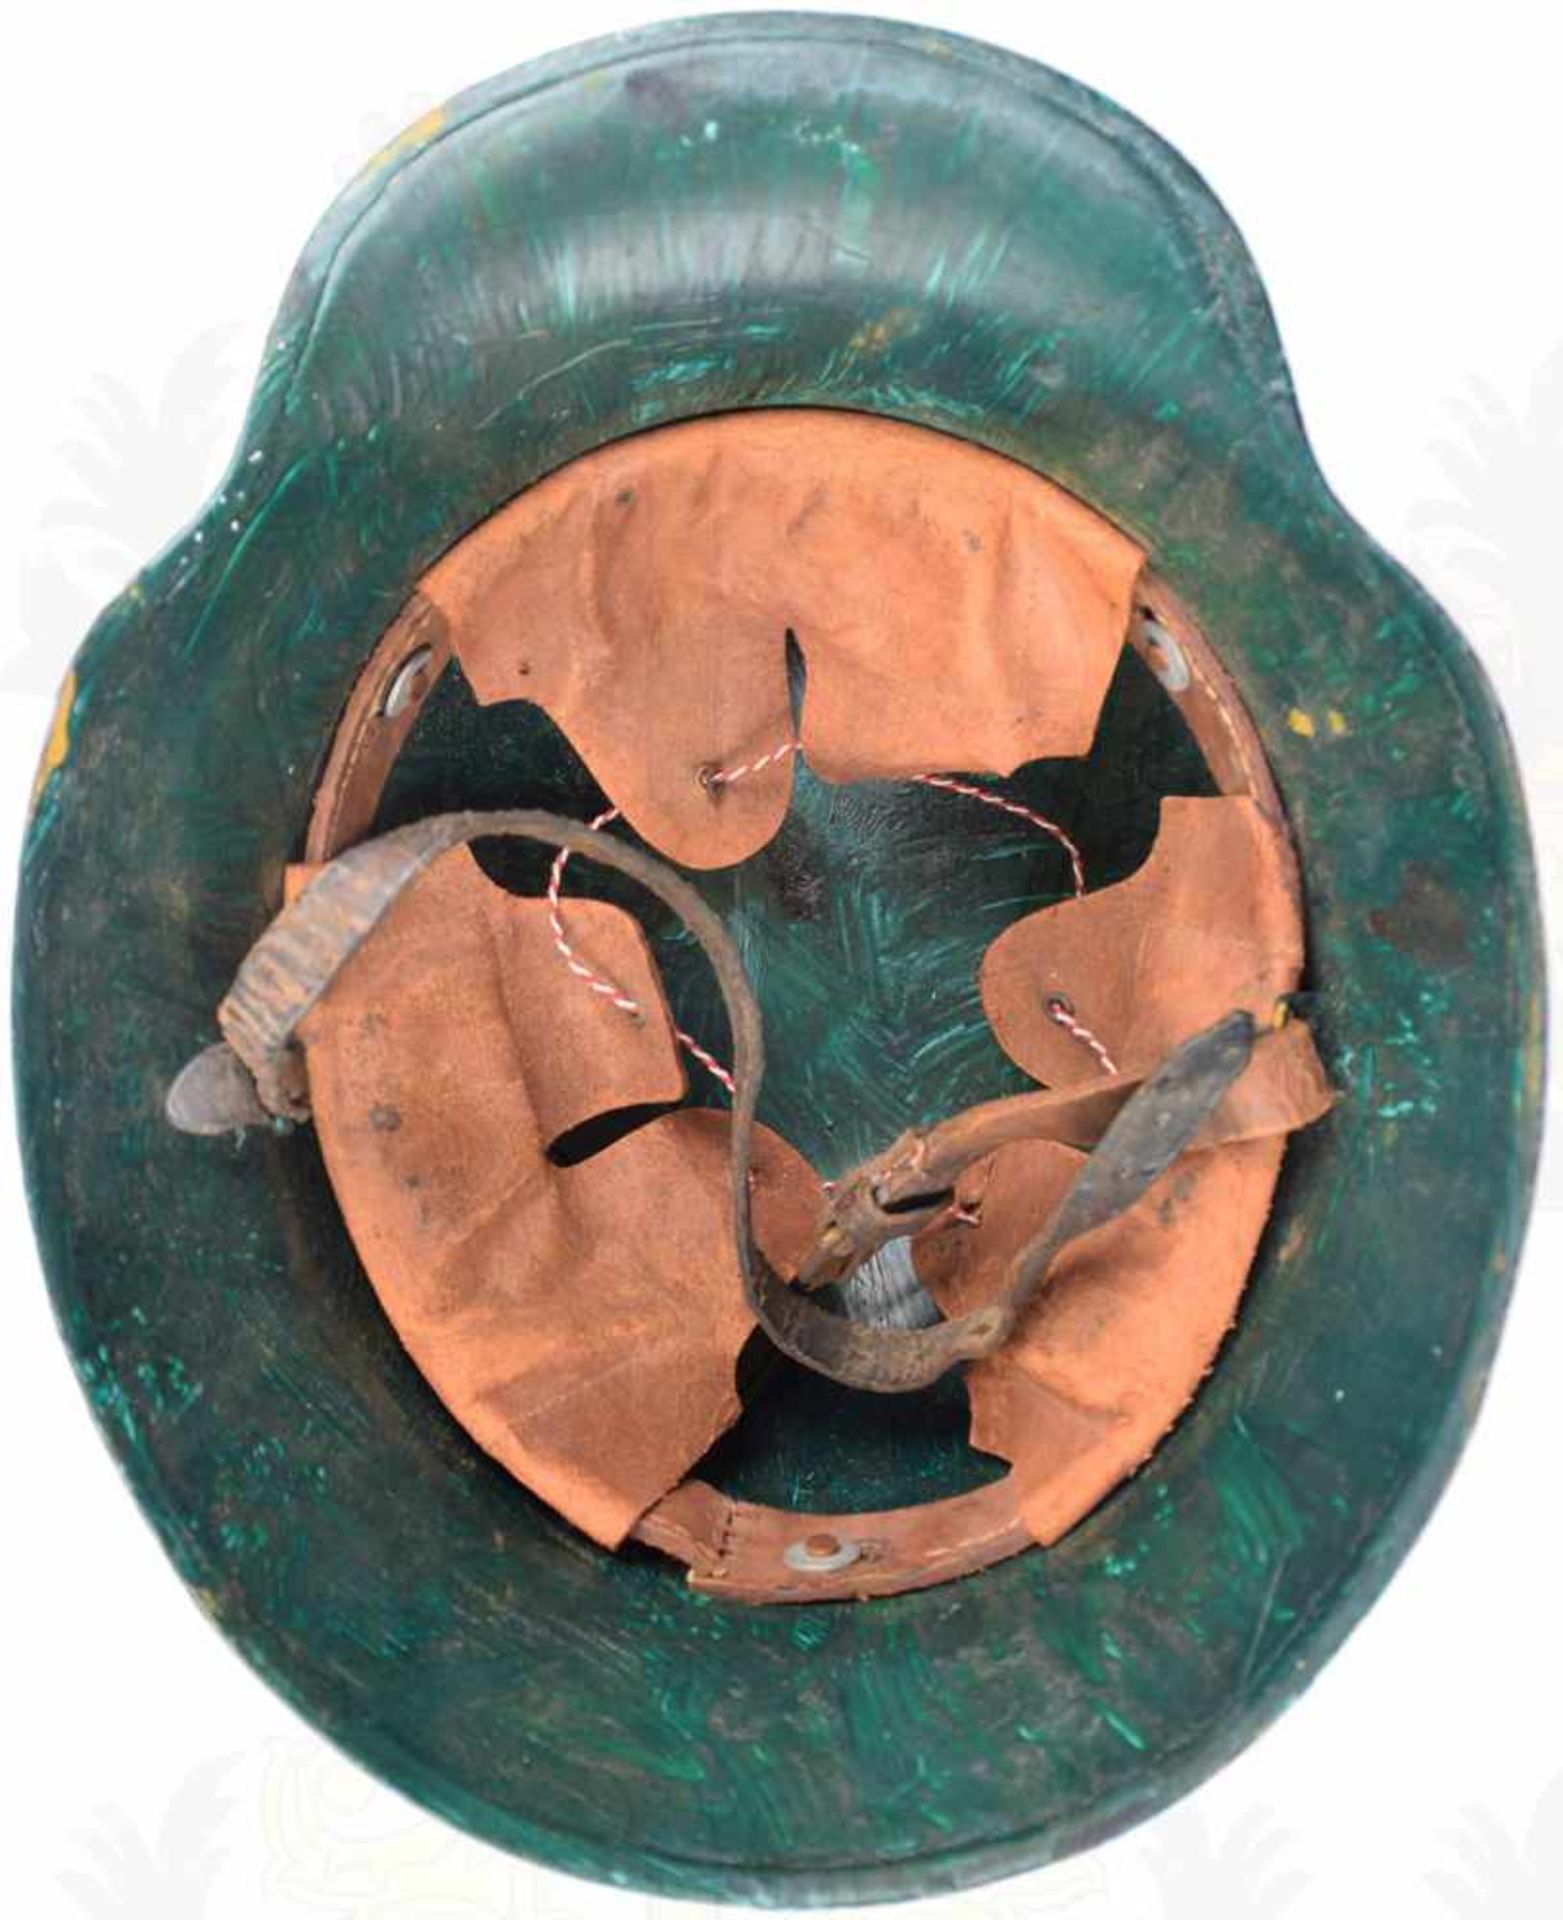 STAHLHELM 17, Sammleranfertigung, Glocke gespachtelt, dick aufgetragener Mimikri-Tarnanstrich, 2 - Bild 3 aus 3